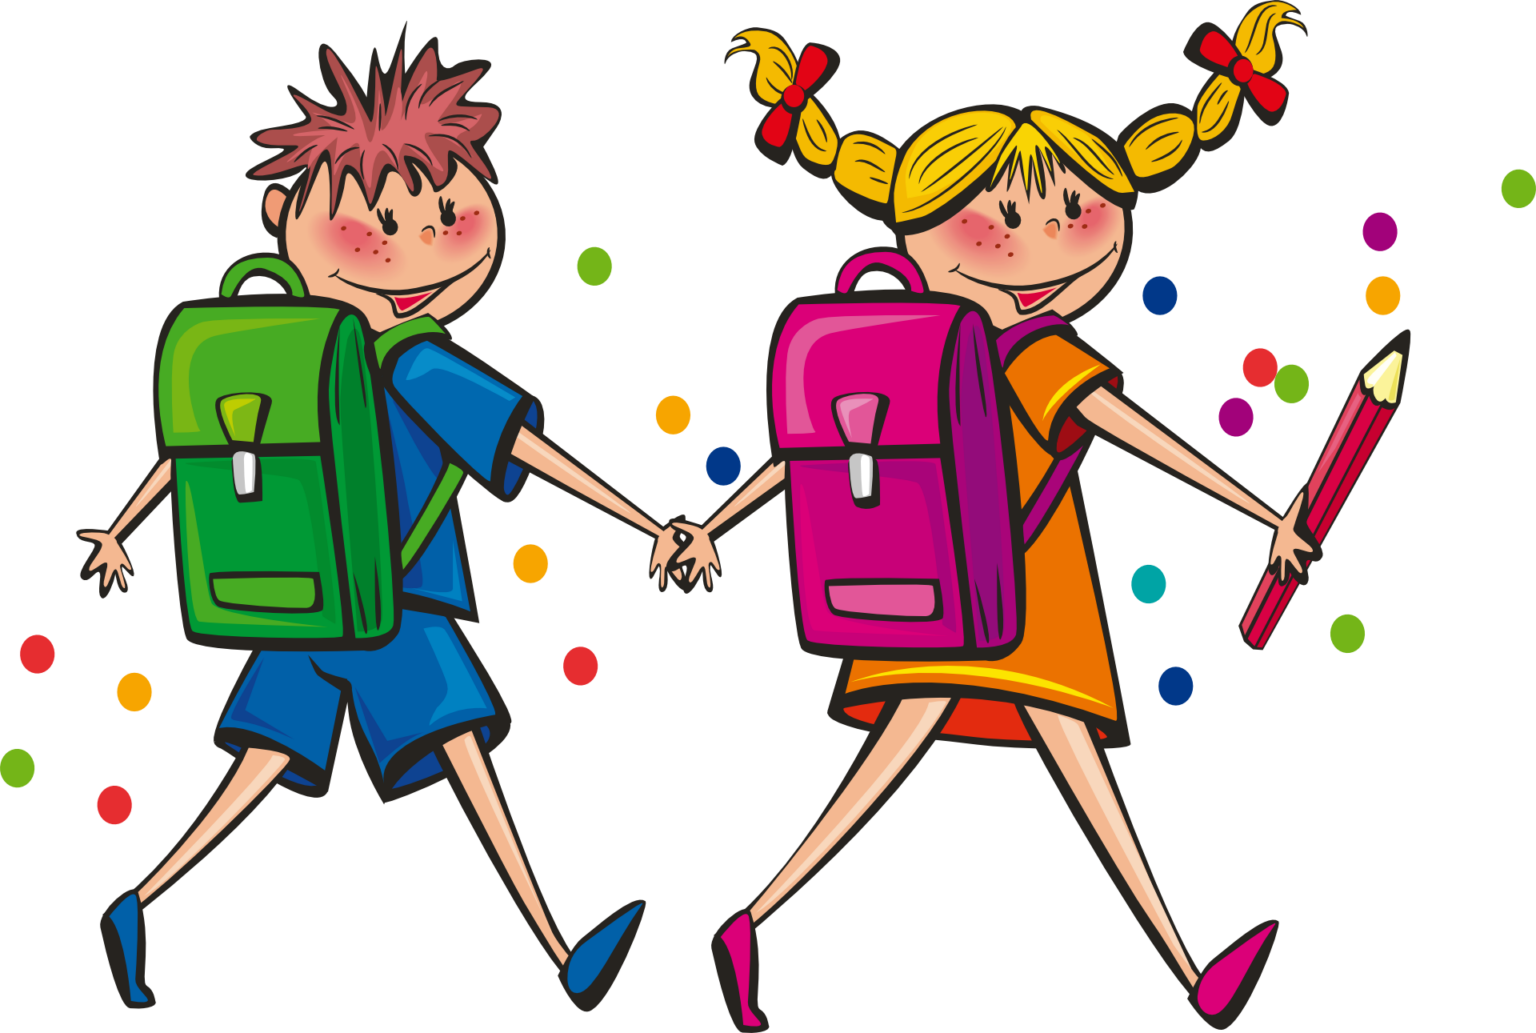 Die Illustration im Querformat zeigt zwei Kinder mit Schulranzen Hand in Hand. Sie scheinen vom Vordergrund in den Hintergrund zu laufen und drehen ihre Gesichter zur Betrachterin. Der Junge hat rotbraune Haare und trägt ein blaues Shirt, blaue Shorts, blaue Schuhe und einen grünen Ranzen. Das Mädchen hat zwei blonde Zöpfe mit roten Schleifen, trägt ein orangefarbenes kurzärmeliges Kleid mit gelbem Saum. Sie trägt einen magentafarbenen Ranzen und in der rechten Hand einen etwa armlangen roten Bleistift. Im Hintergrund sind ein paar diffus verteilte bunte Punkte zu sehen.